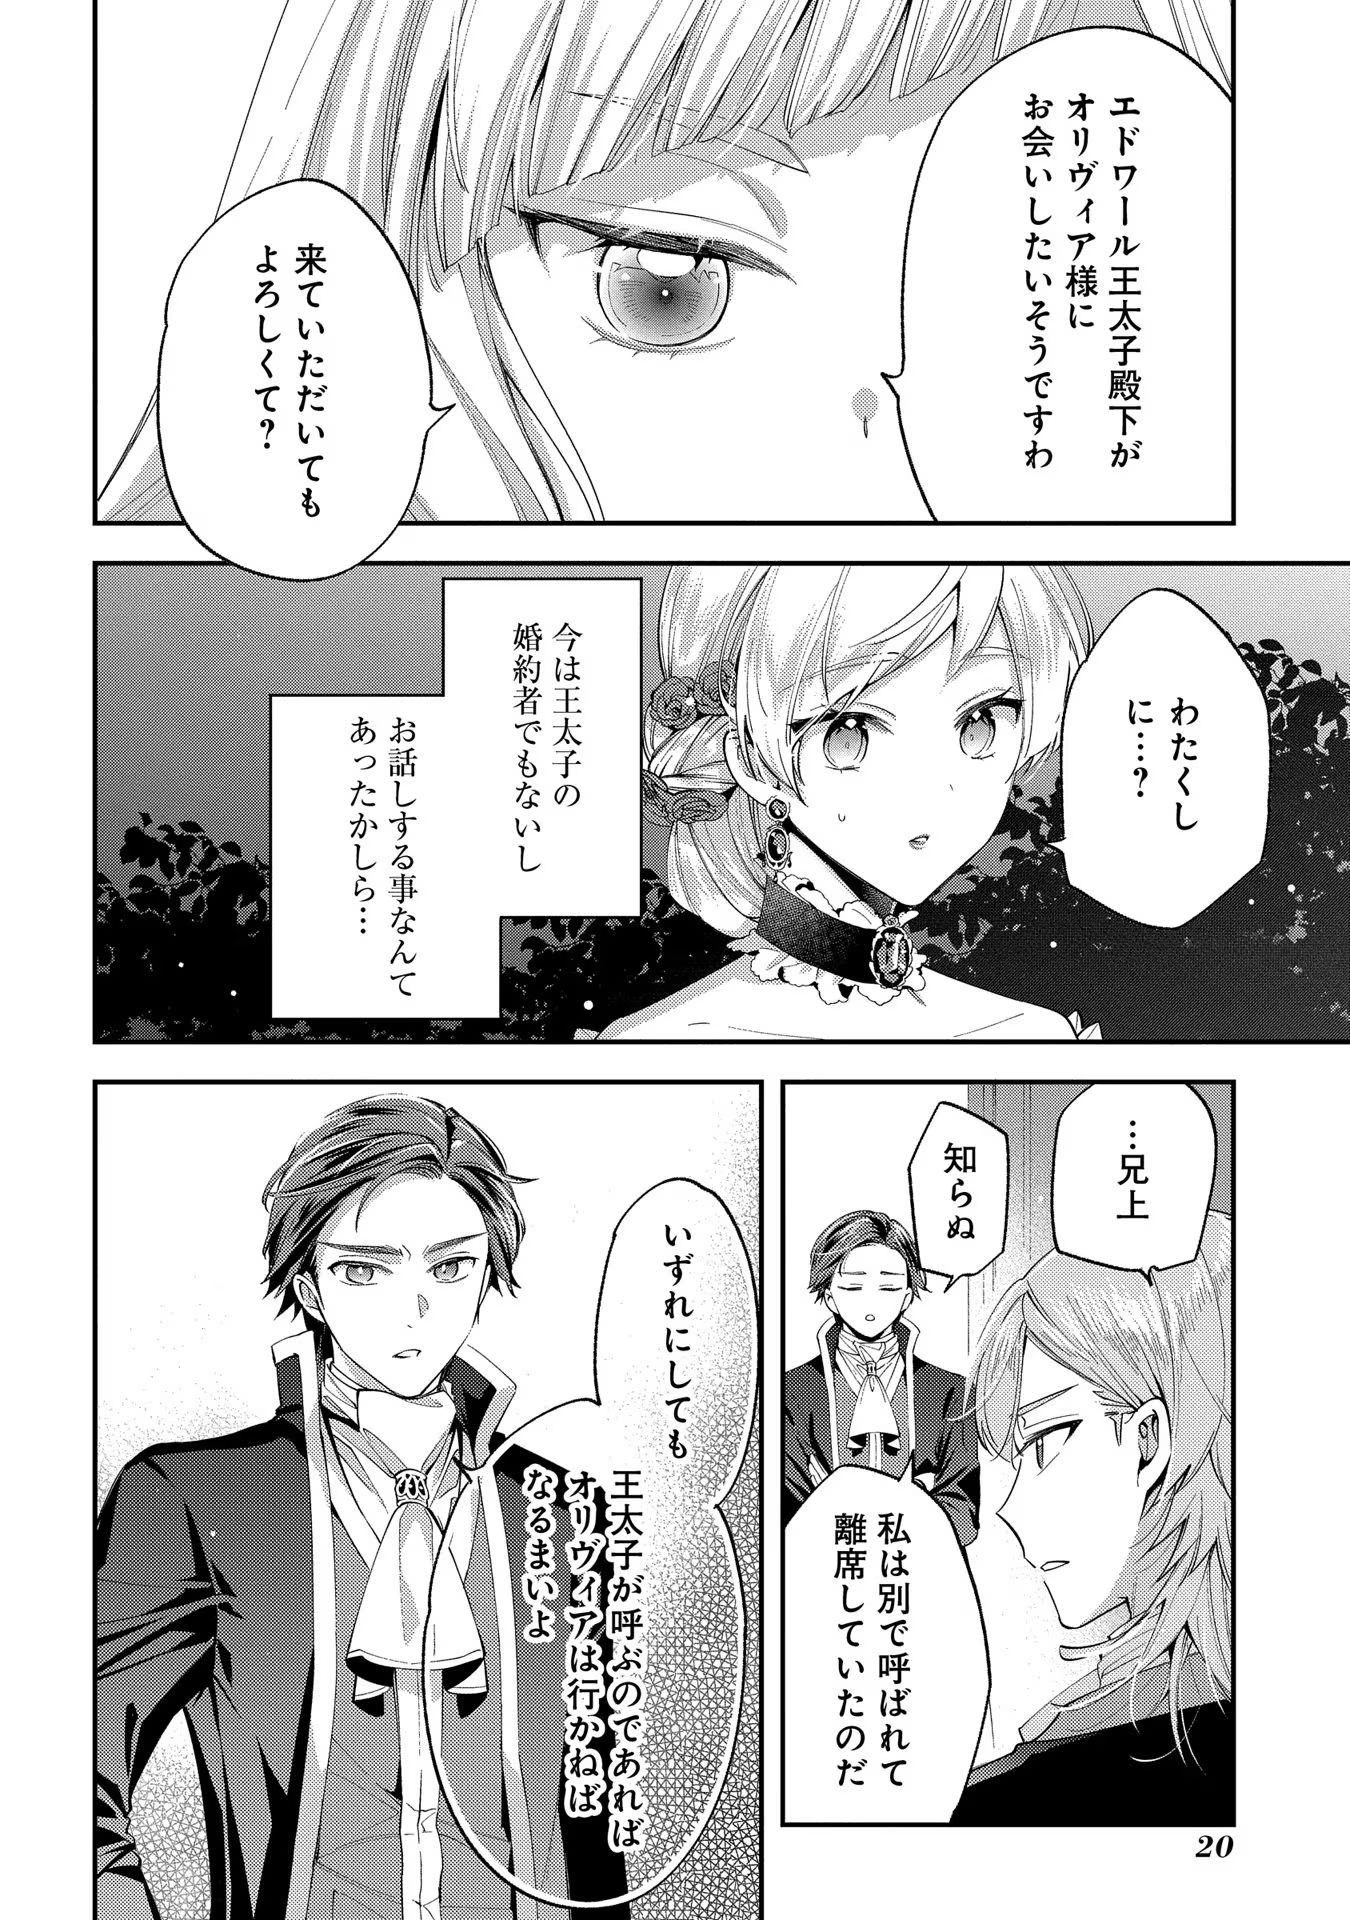 Outaishi ni Konyaku Hakisareta no de, Mou Baka no Furi wa Yameyou to Omoimasu - Chapter 11 - Page 18